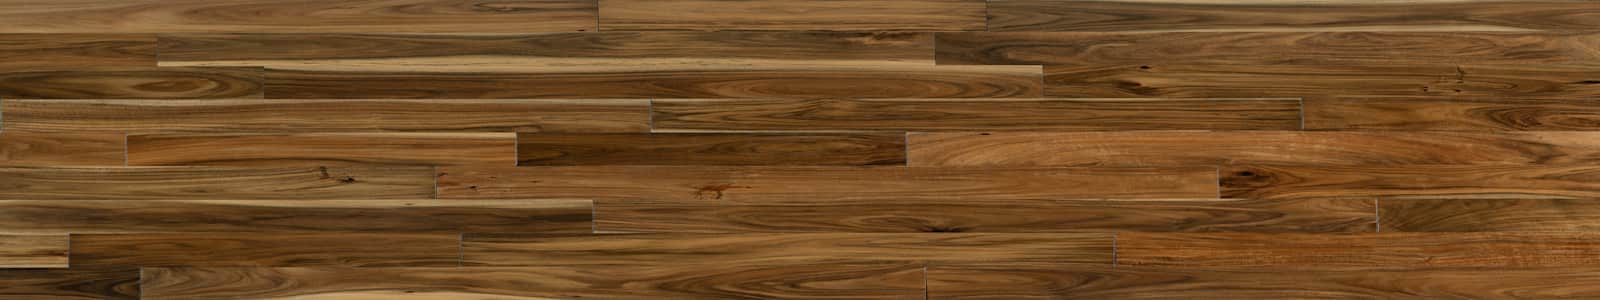 Discover Engineered Hardwood Flooring, Hardwood Floor Installation Fort Mill Schedule